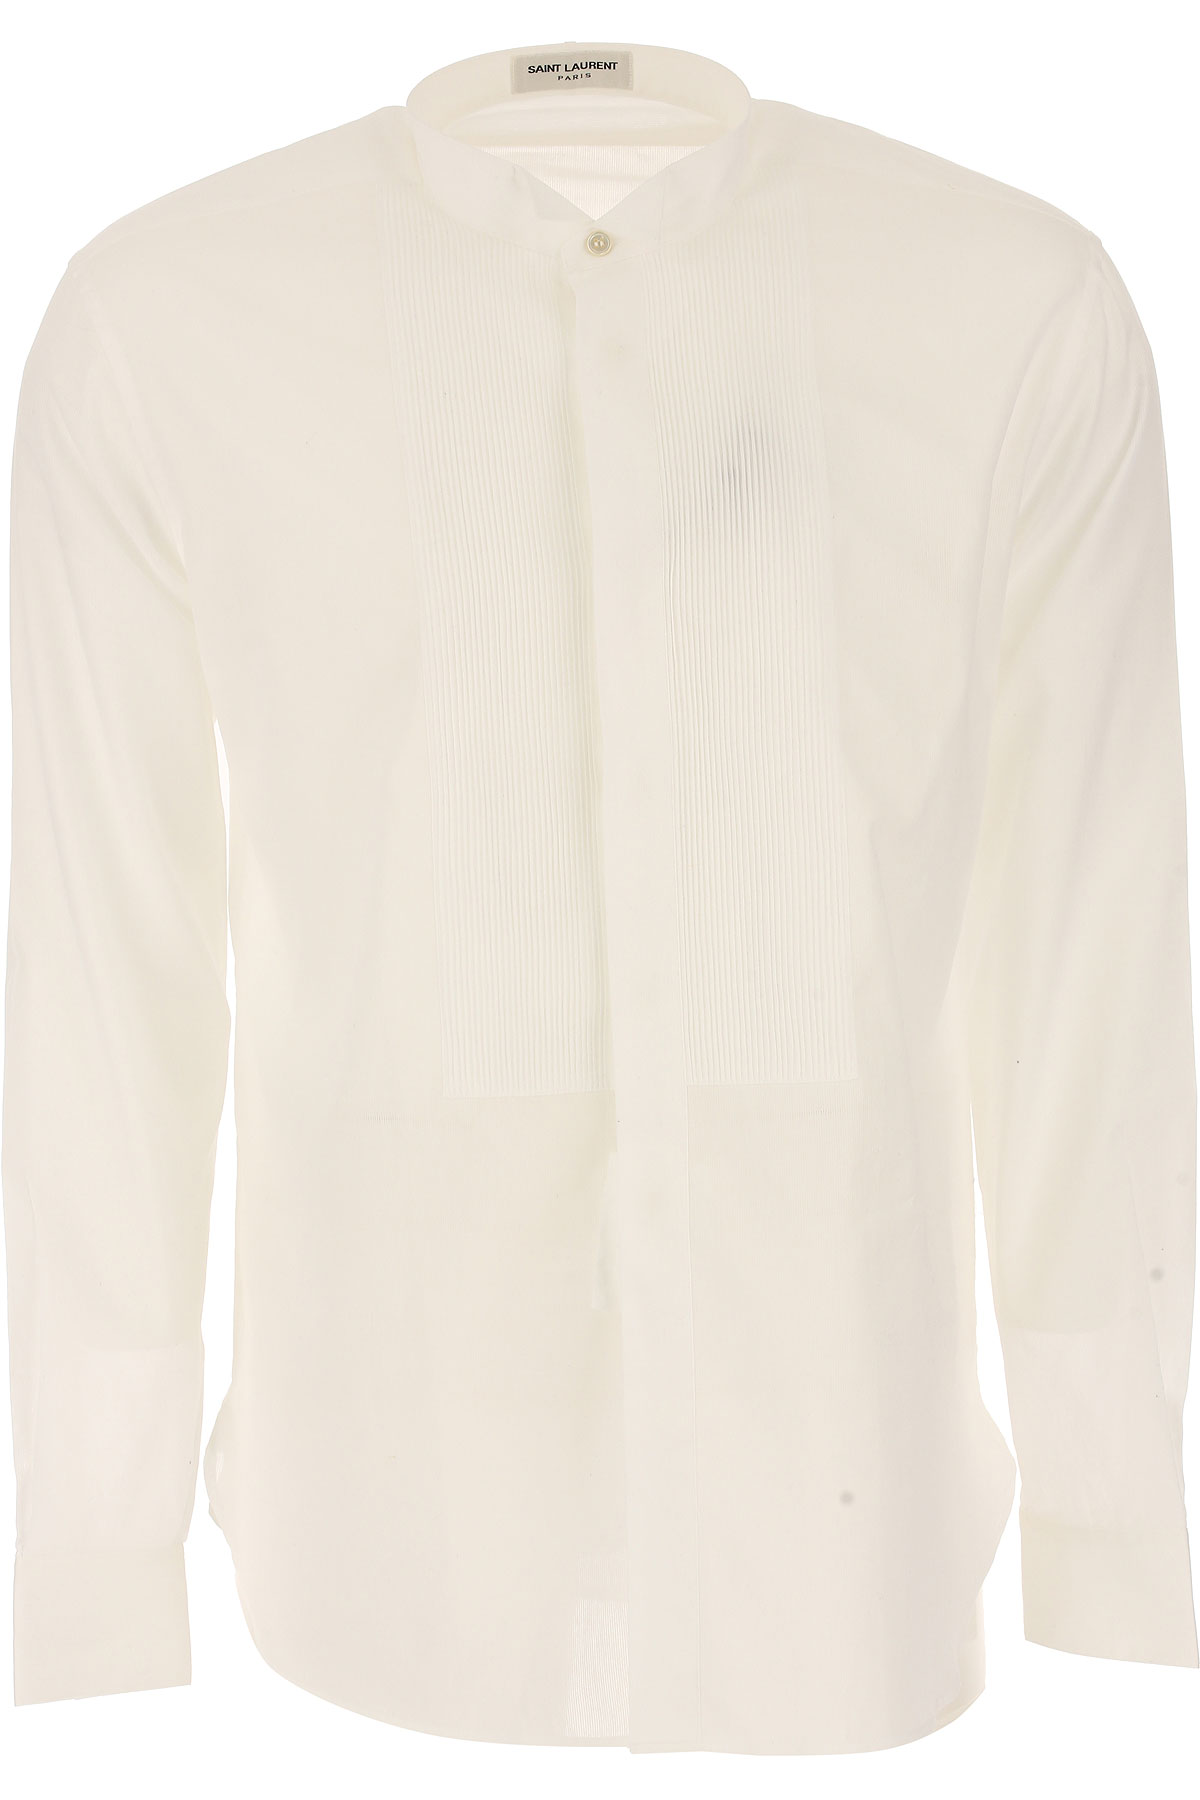 Yves Saint Laurent Chemise Homme, Blanc, Coton, 2017, 40 41 42